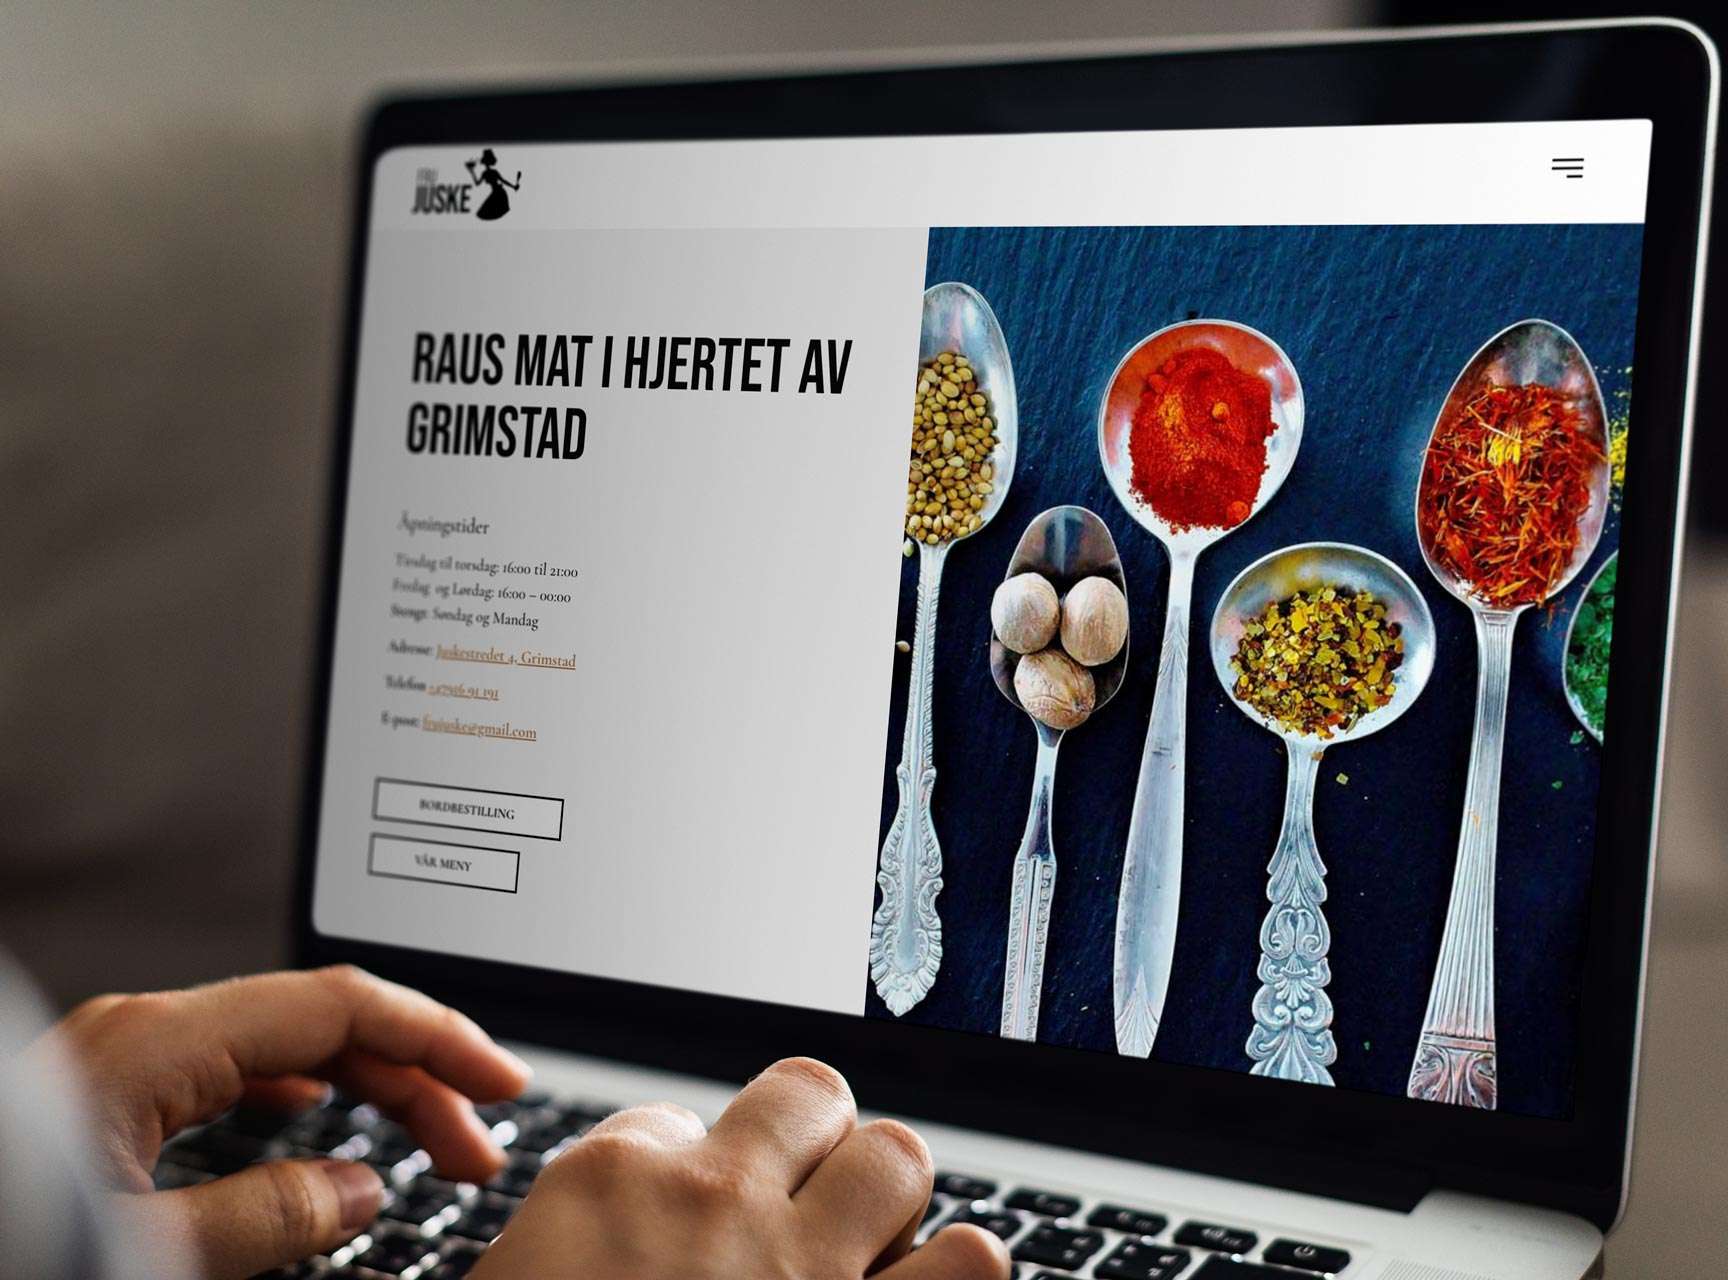 Billig restaurant hjemmeside eksempel fru juske i grimstad